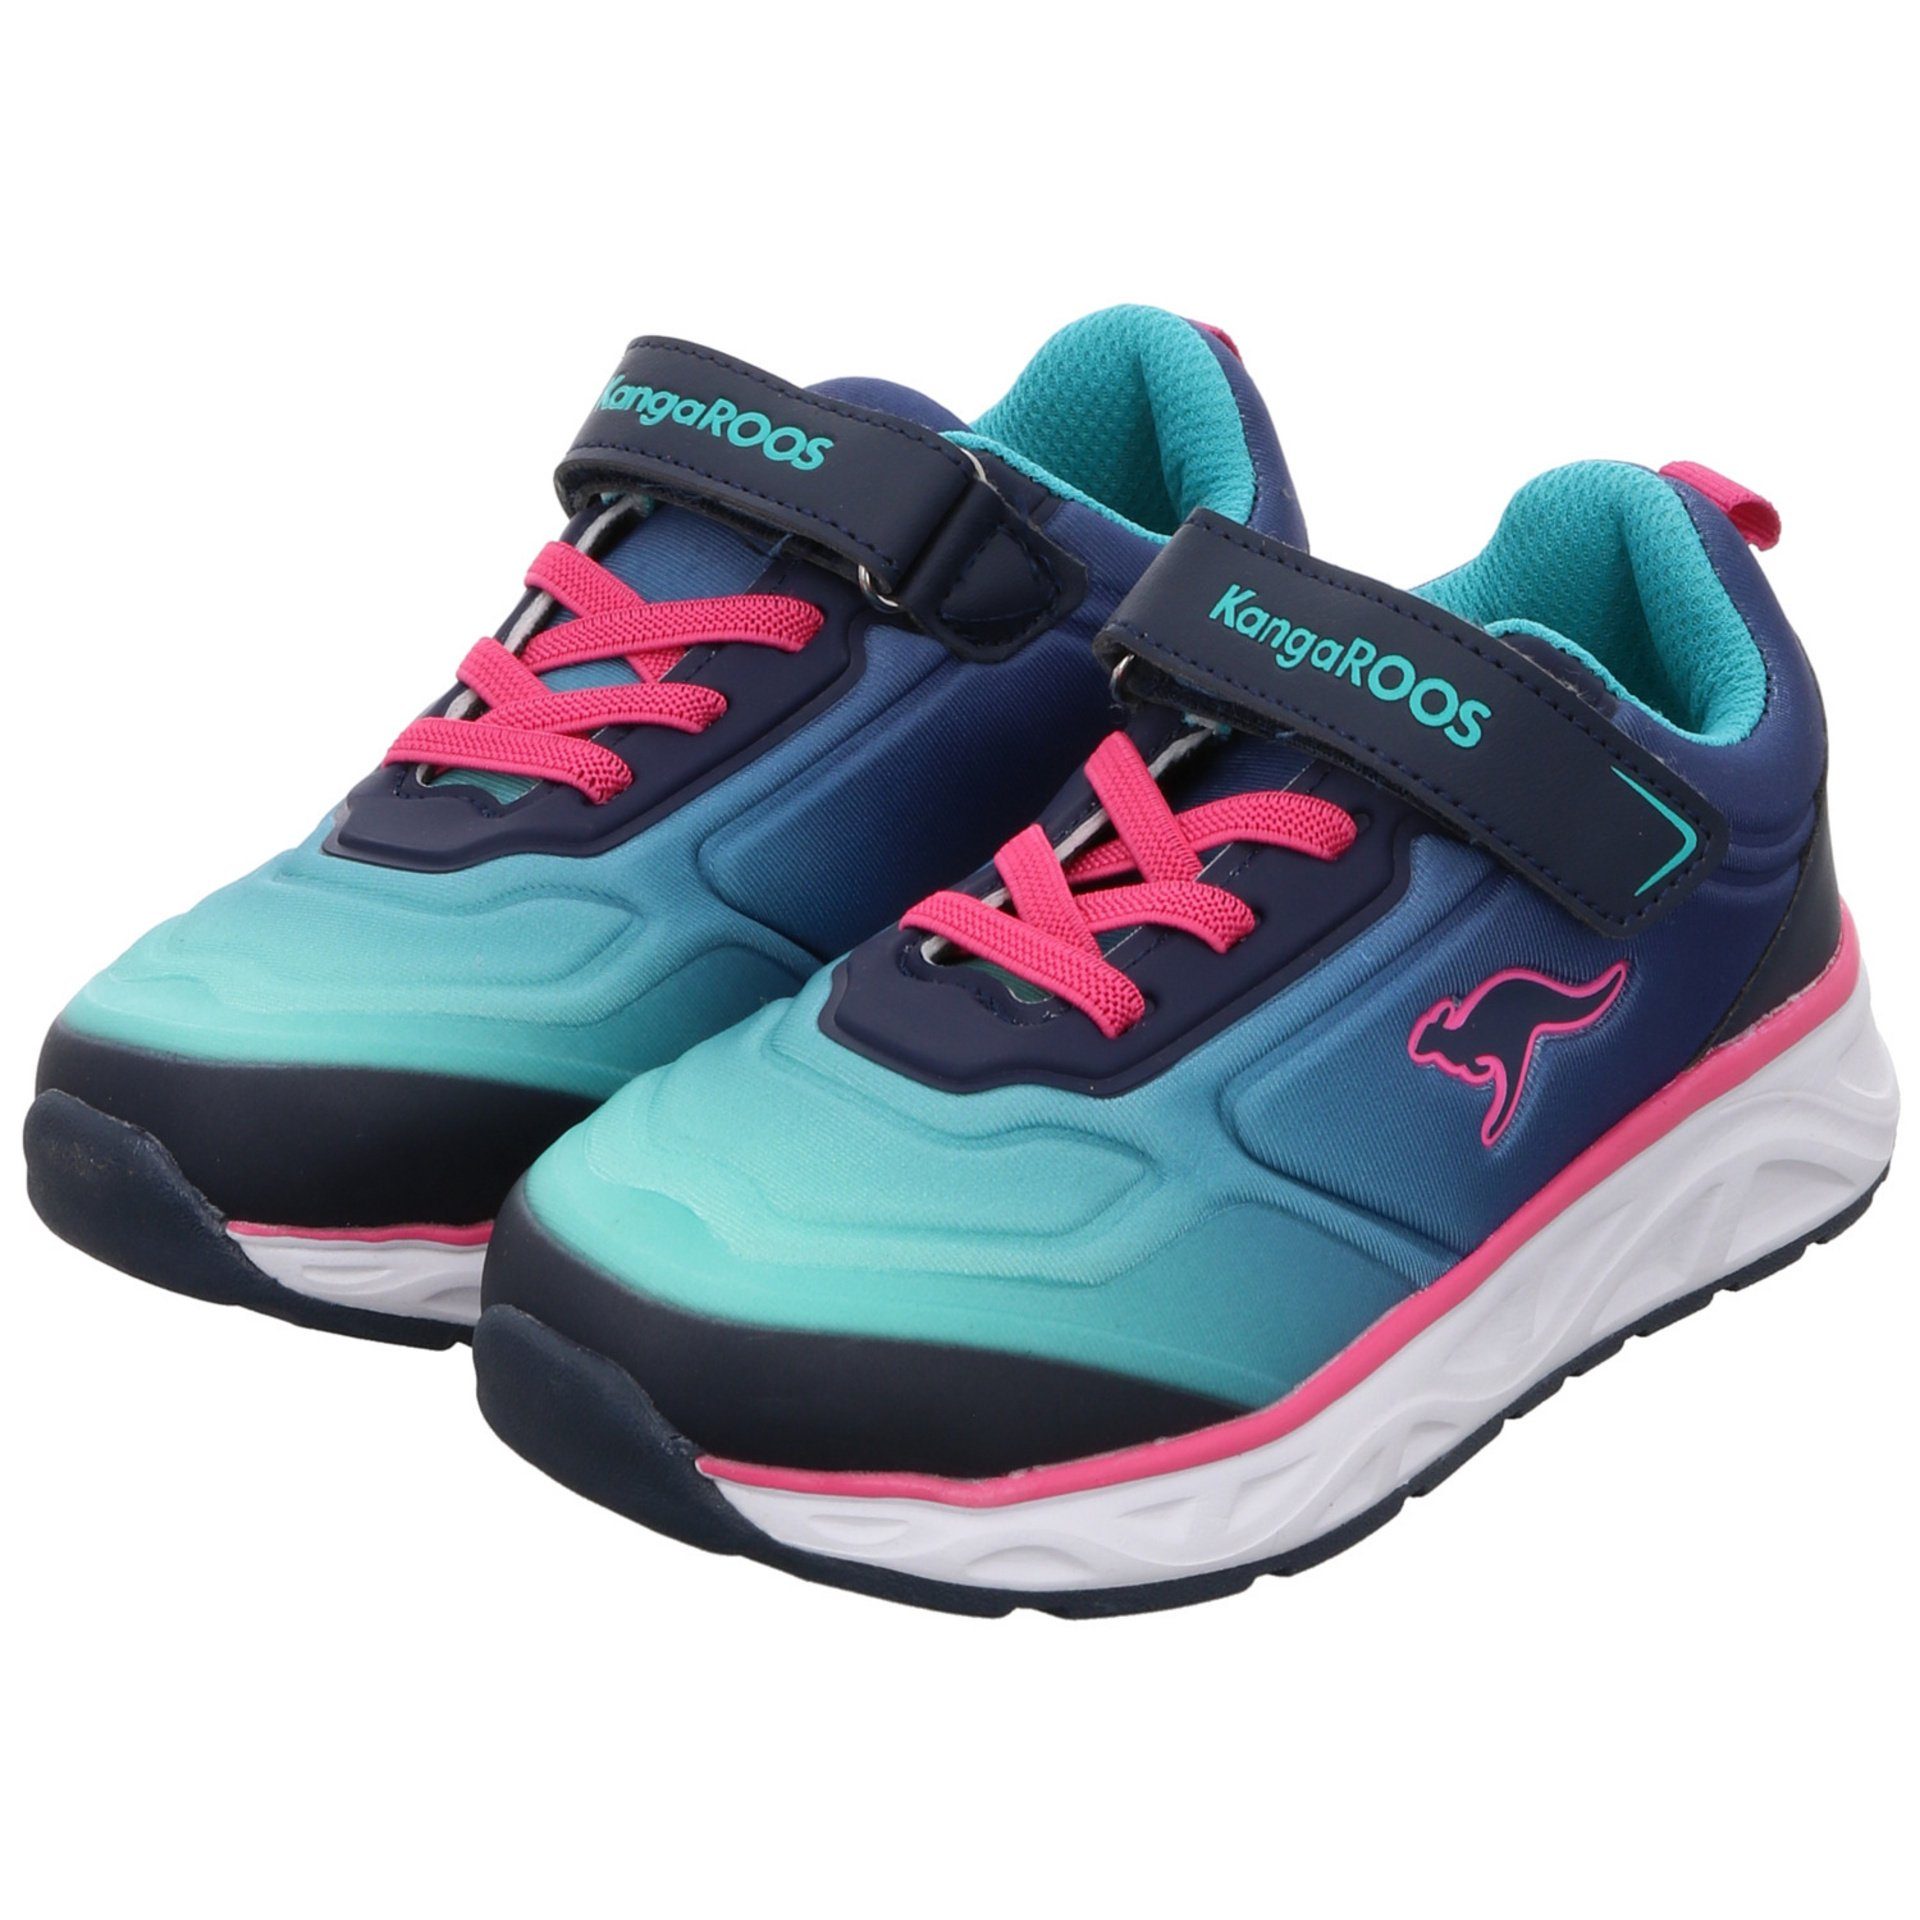 Sneaker KangaROOS Synthetikkombination Sneaker Logoschriftzug Airos K-OK navy/daisy/pink